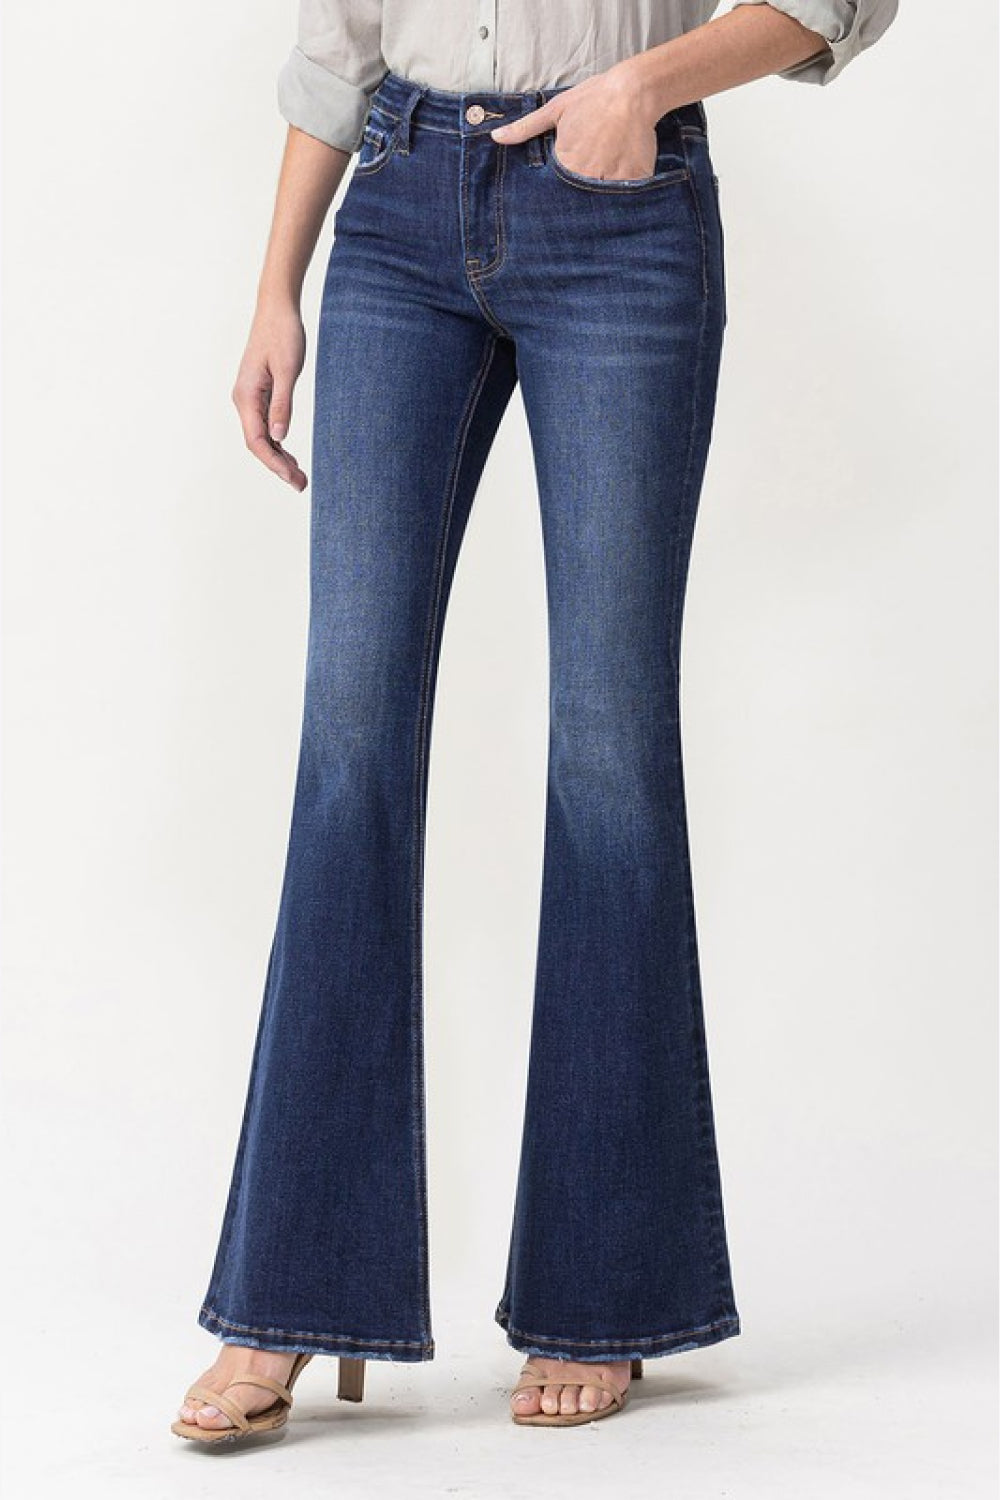 LOVERVET by Vervet Full Size Joanna Mid Rise Flare Jeans